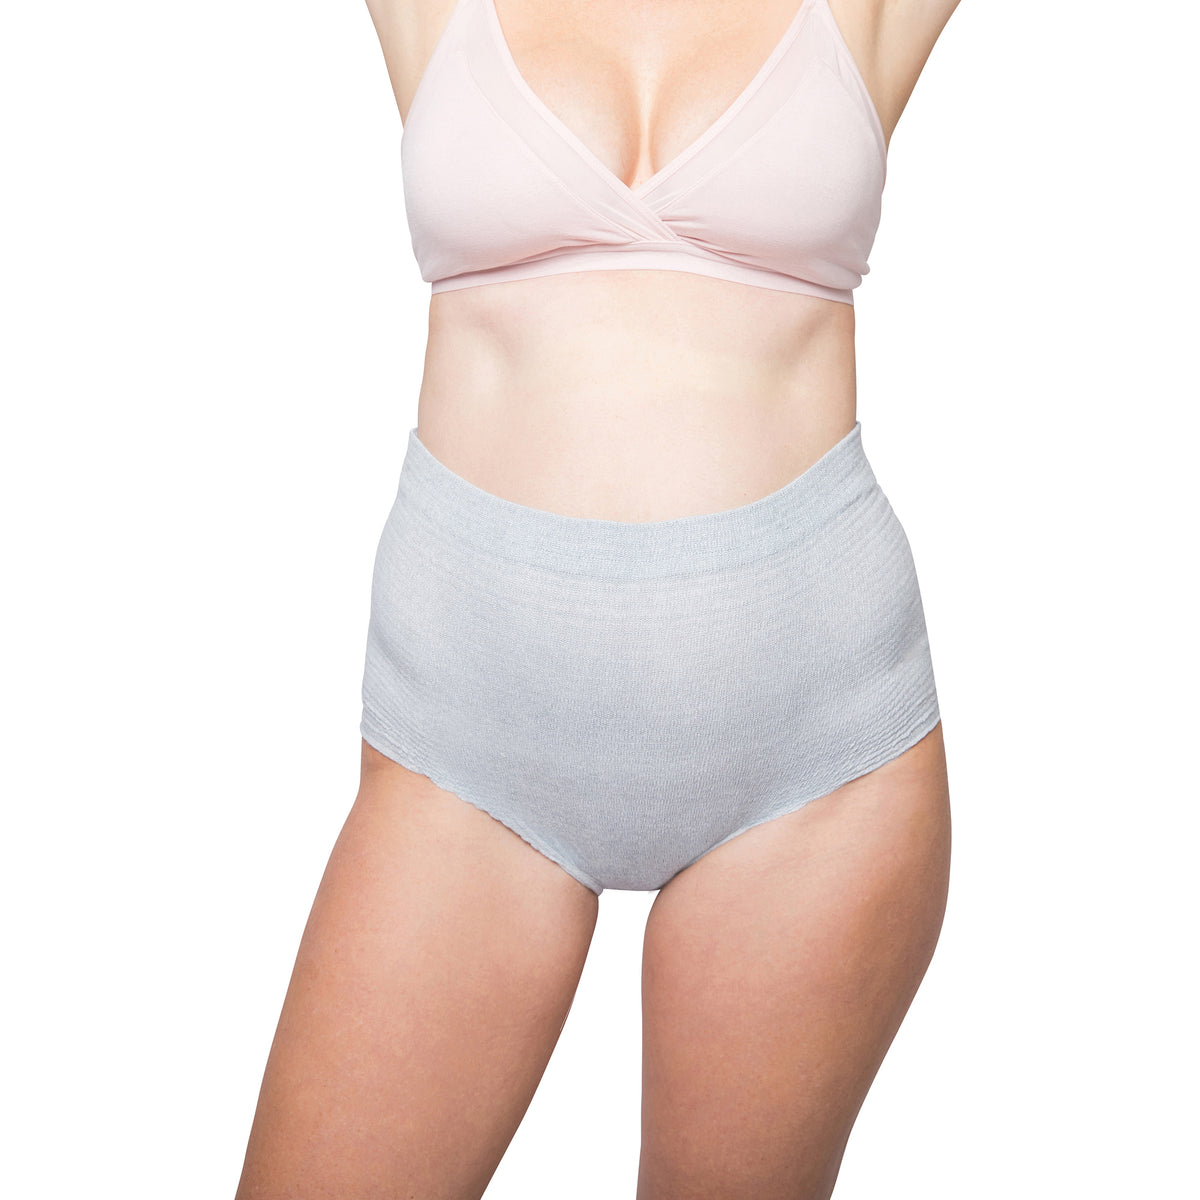 Mesh Underwear Postpartum 5 Count Disposable Hospital Underwear